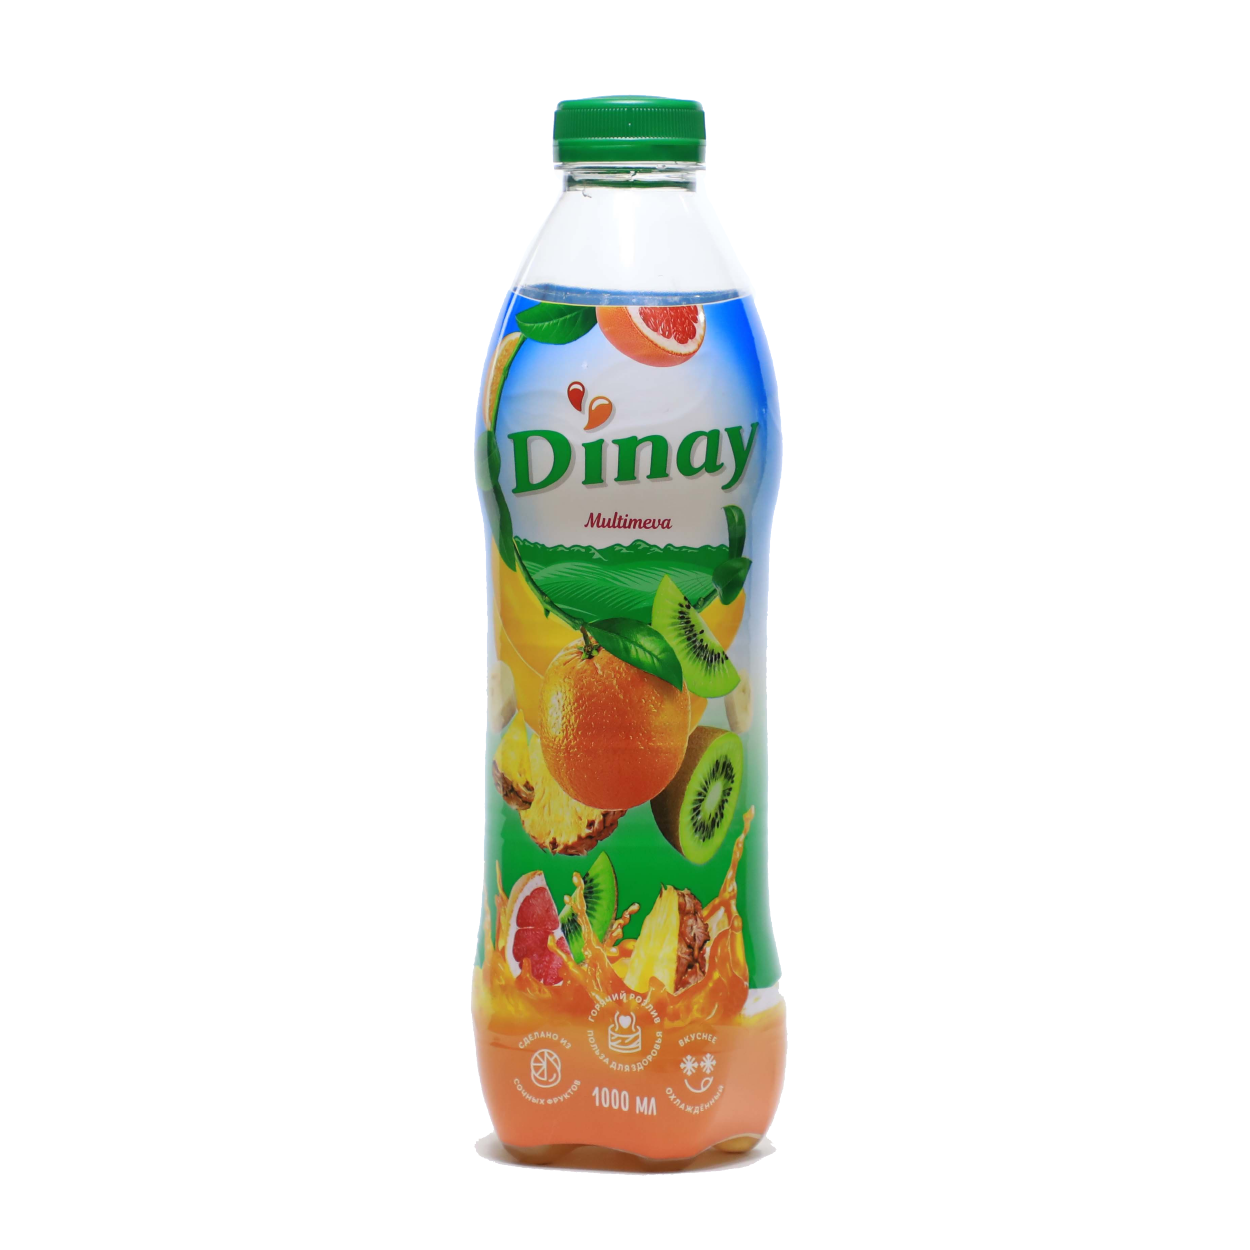 Pat 8. Dinay сок. Динай напиток. Гринлайн напиток. Dinay Gyu.